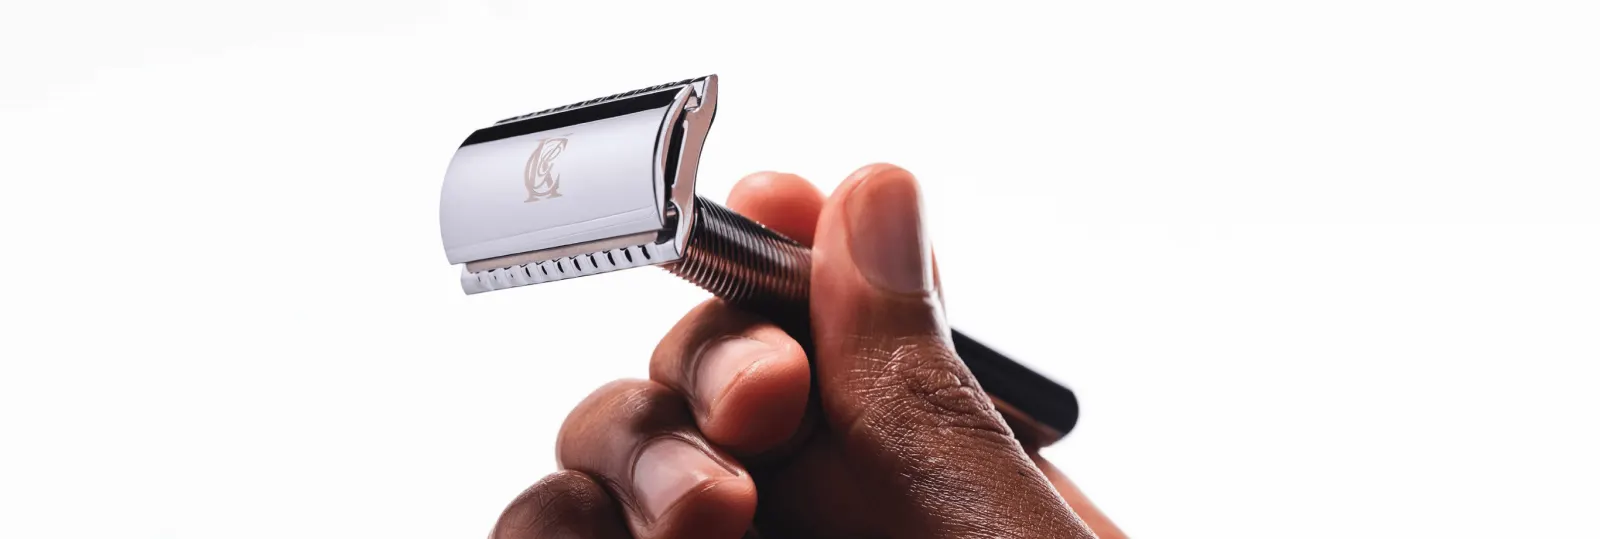 Modern, Innovative Shaving from Gillette